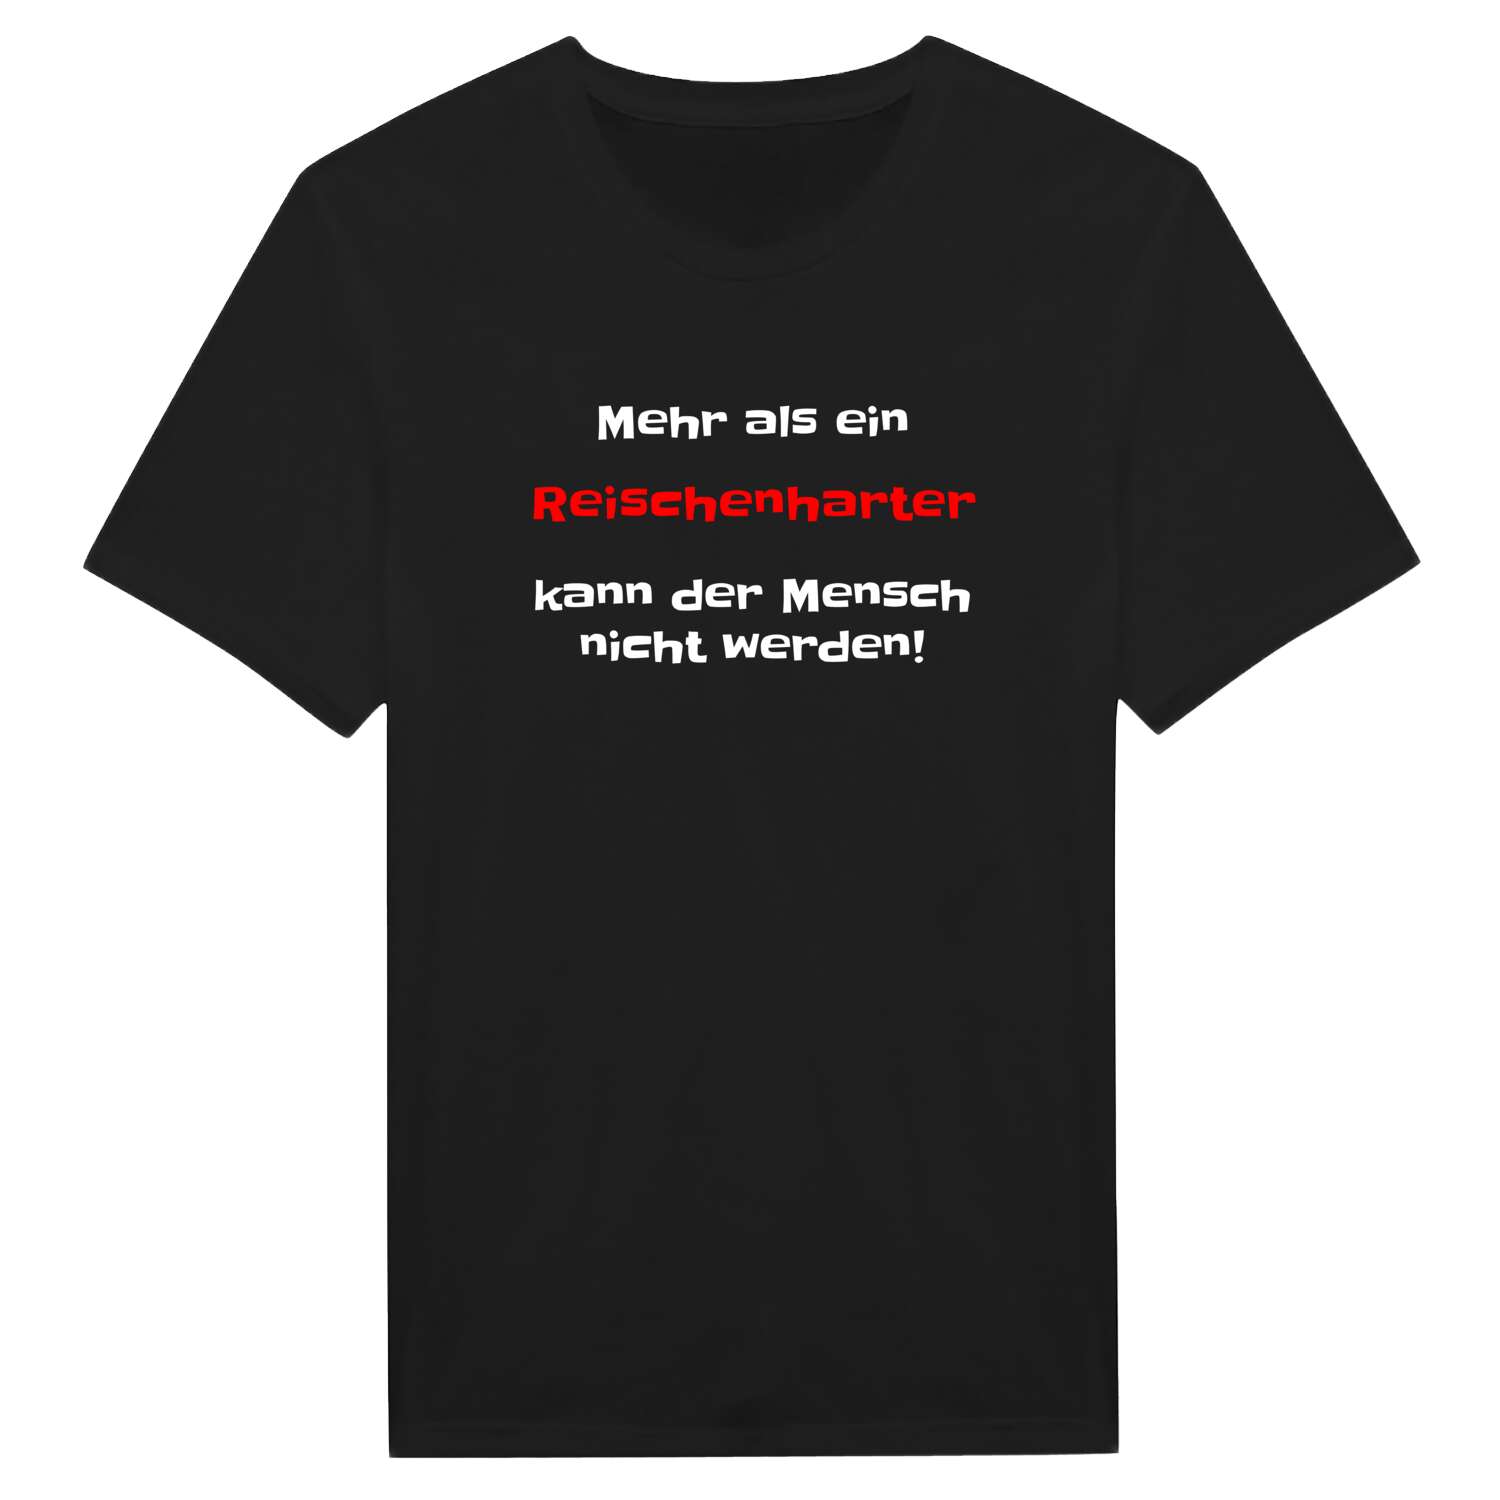 Reischenhart T-Shirt »Mehr als ein«